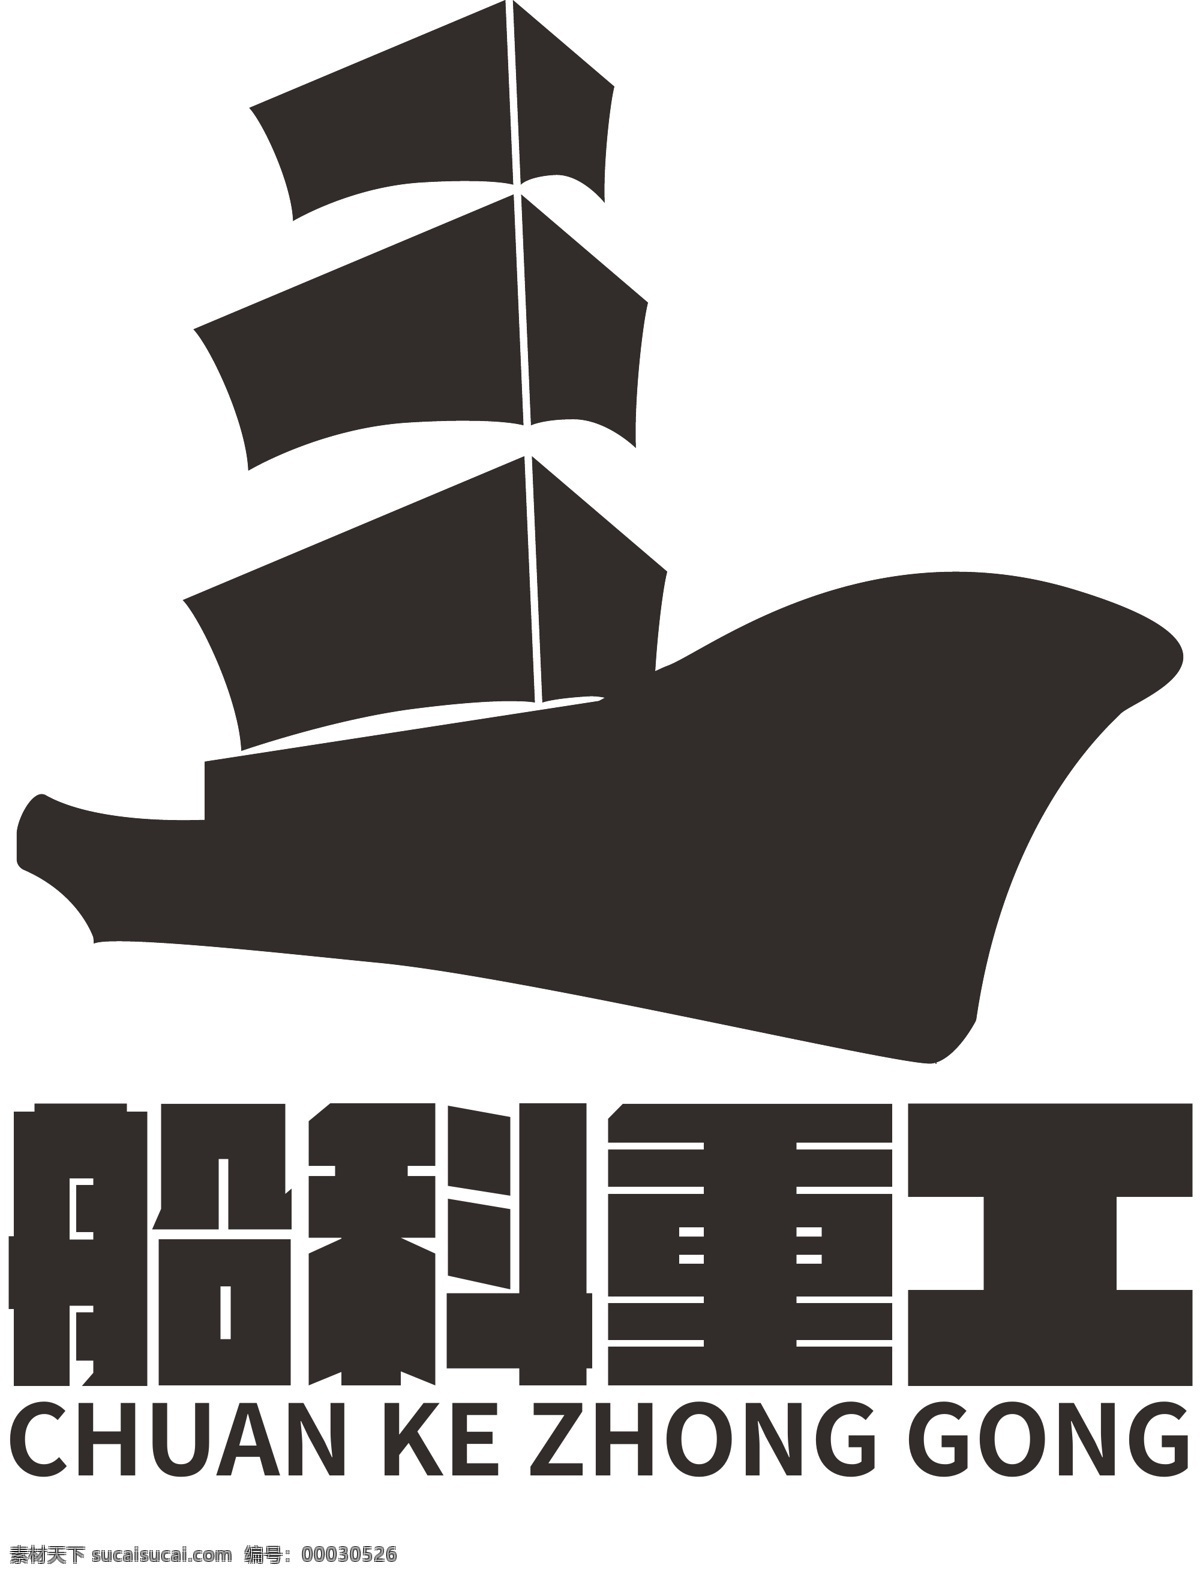 船 类 重工业 logo 标志设计 元素 黑白 版式 黑色 厚重